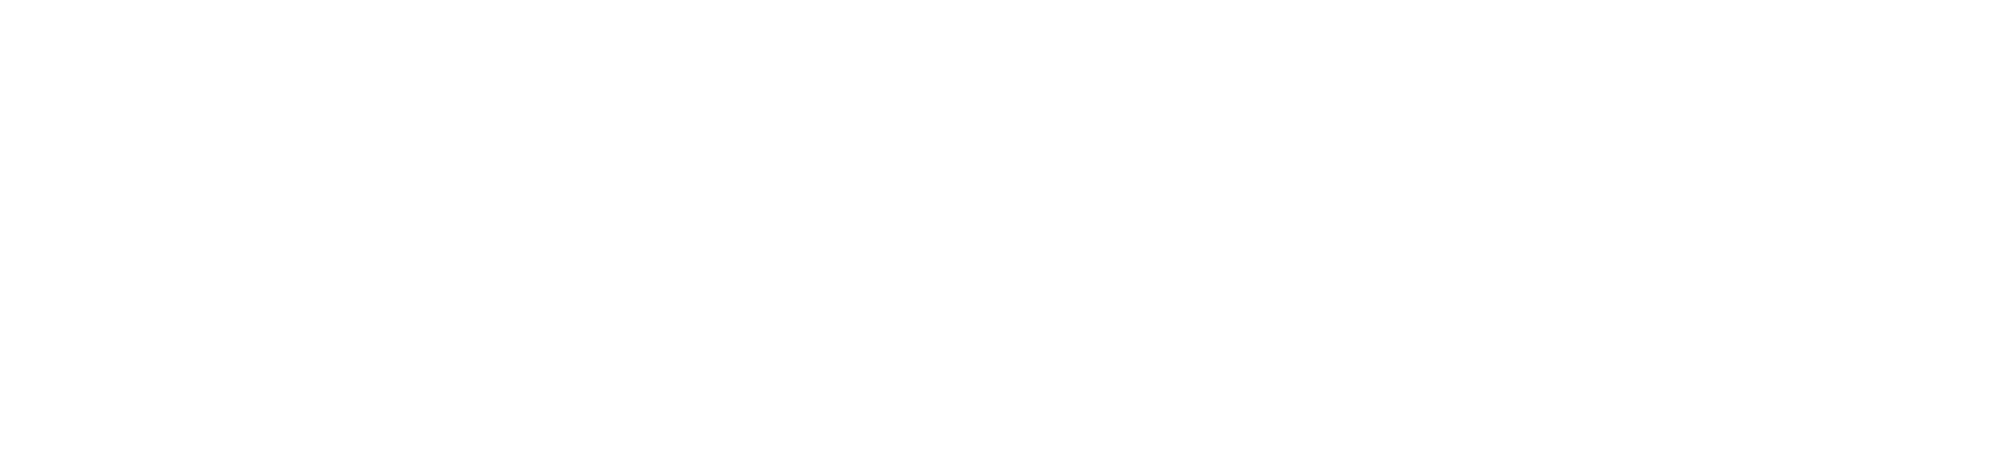 Bell jones franklin logo